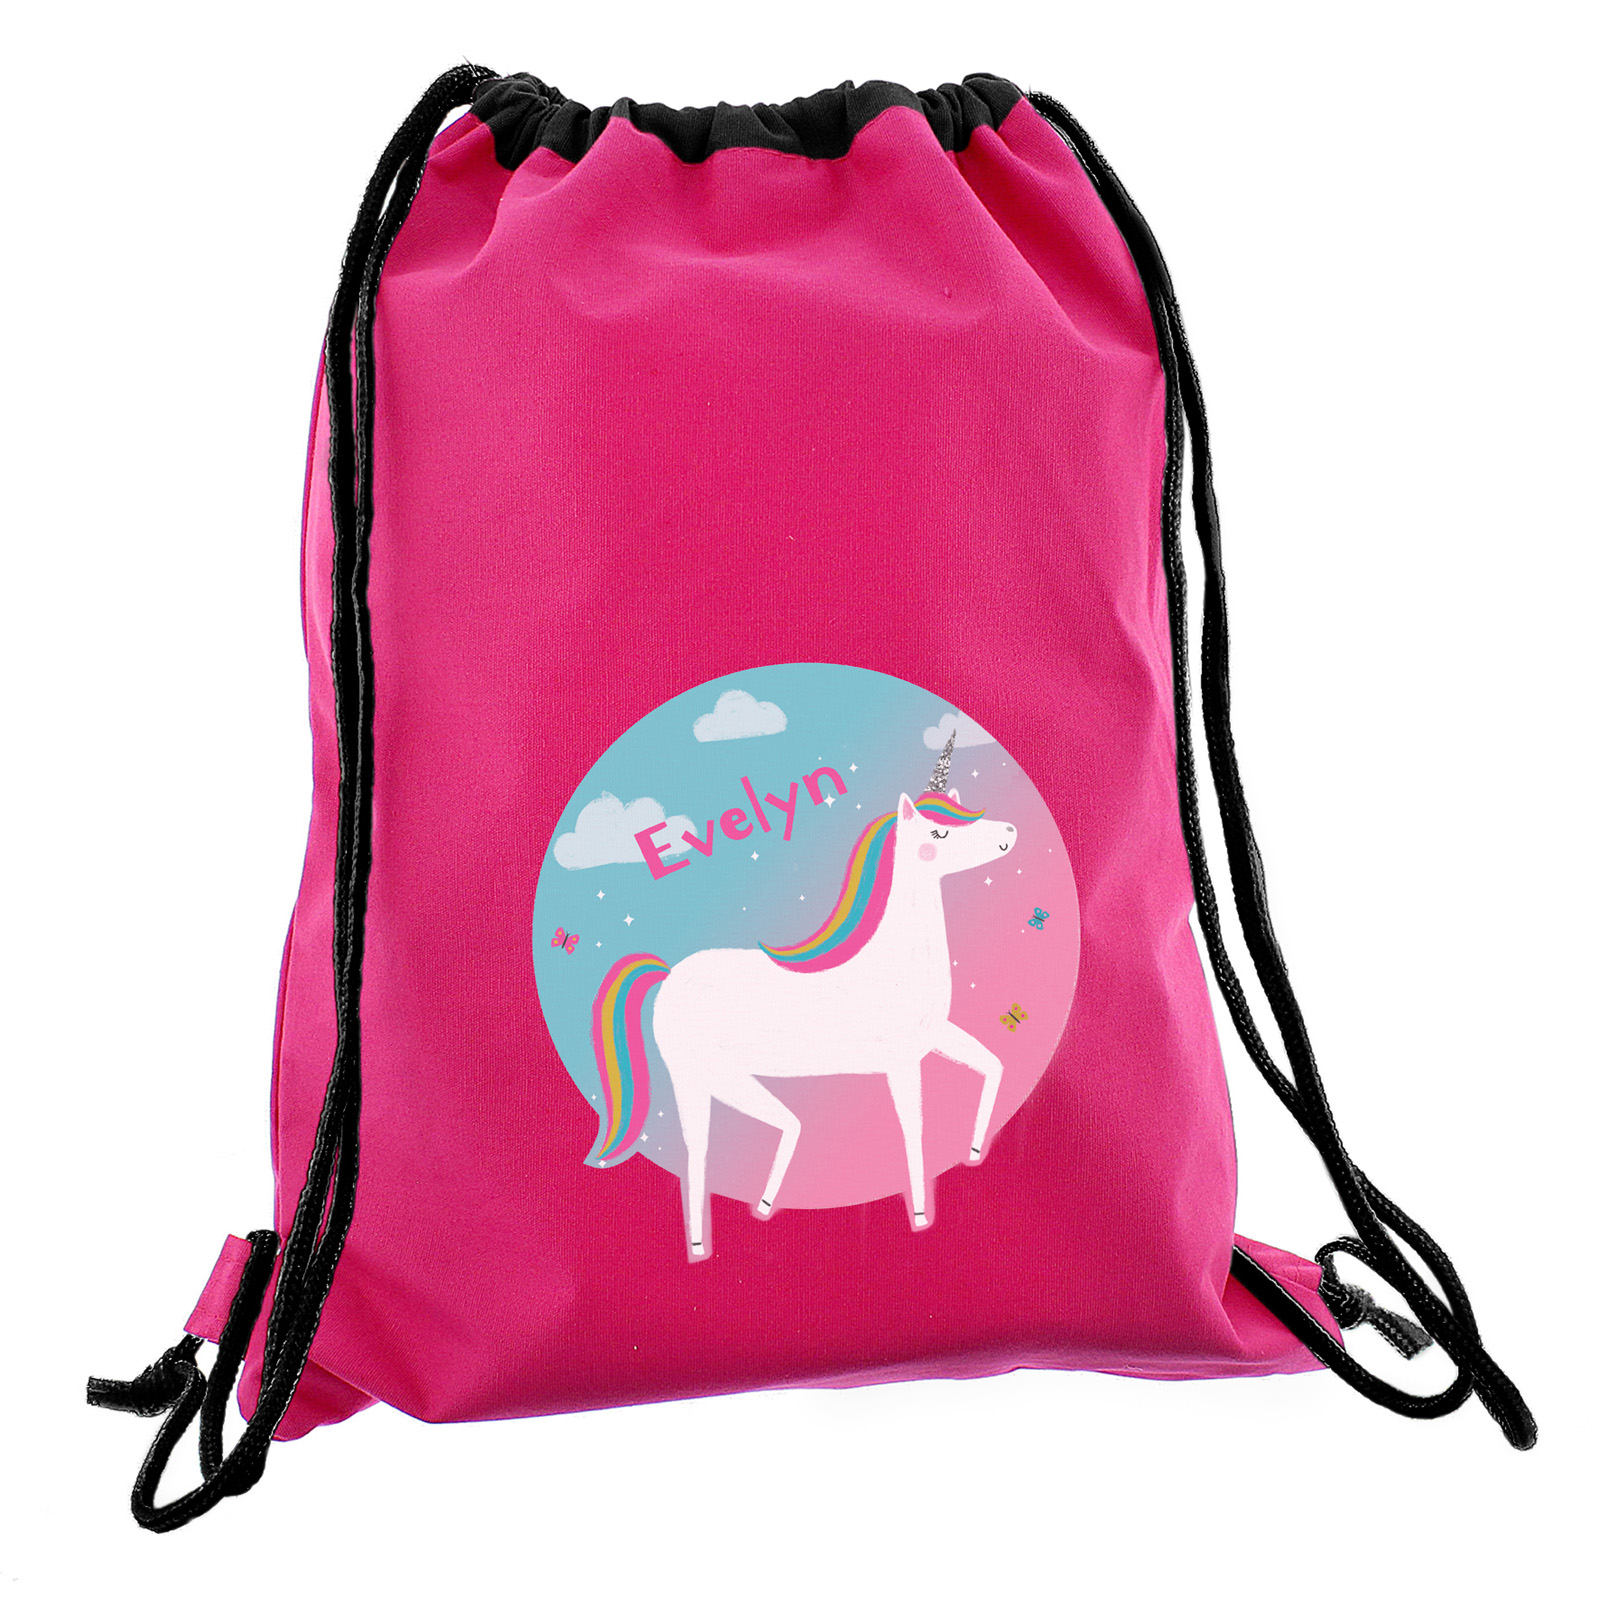 Personalised Drawstring Bag - Pink Unicorn